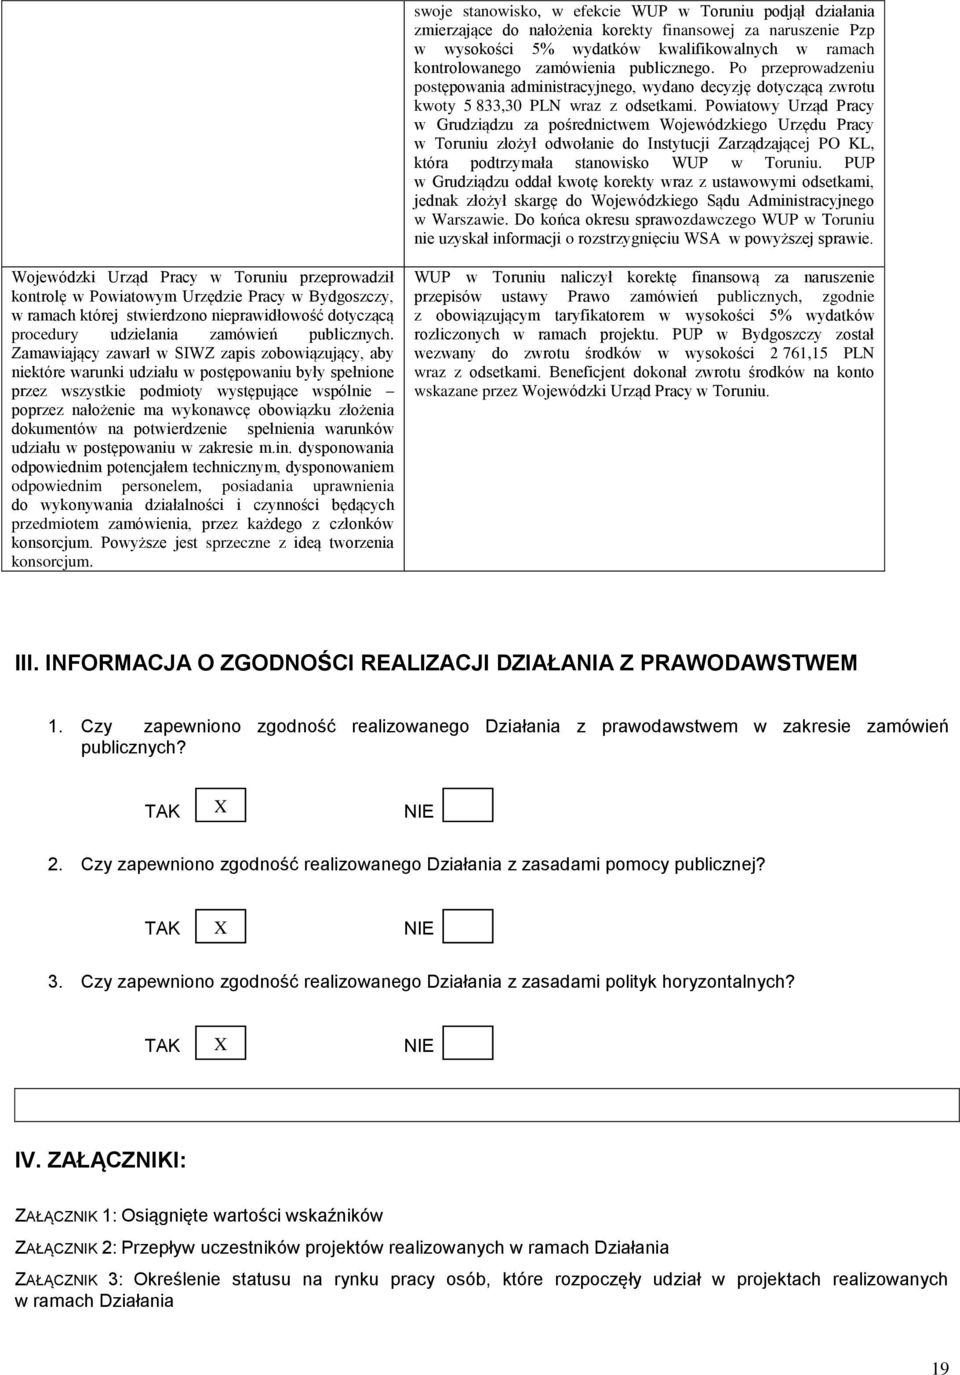 Powiatowy Urząd Pracy w Grudziądzu za pośrednictwem Wojewódzkiego Urzędu Pracy w Toruniu złożył odwołanie do Instytucji Zarządzającej PO KL, która podtrzymała stanowisko WUP w Toruniu.